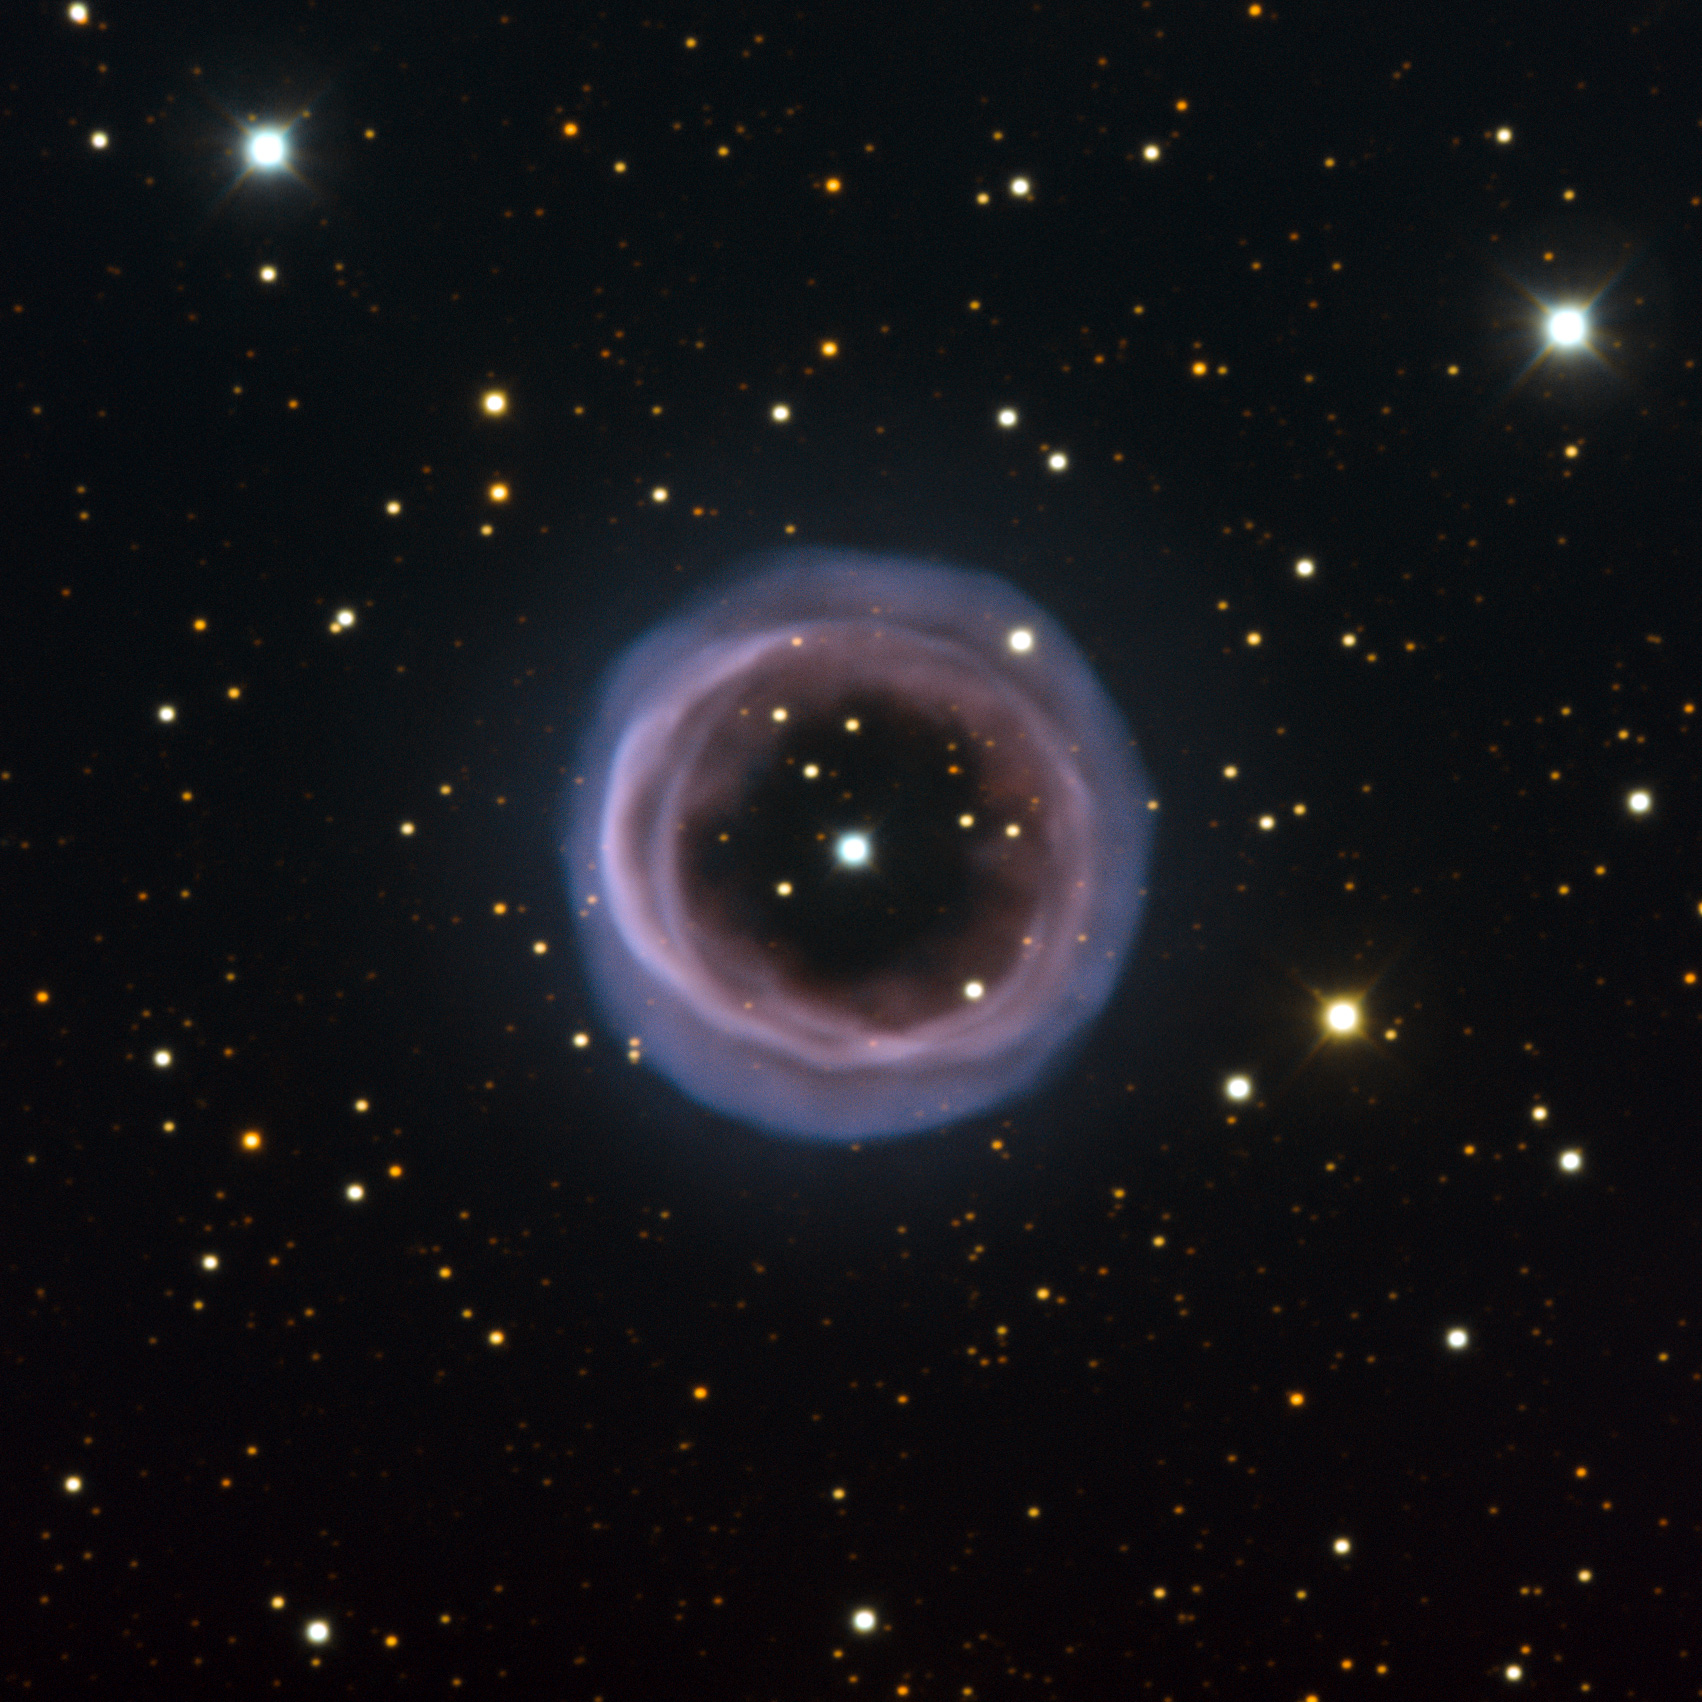 Shapley 1: An Annular Planetary Nebula